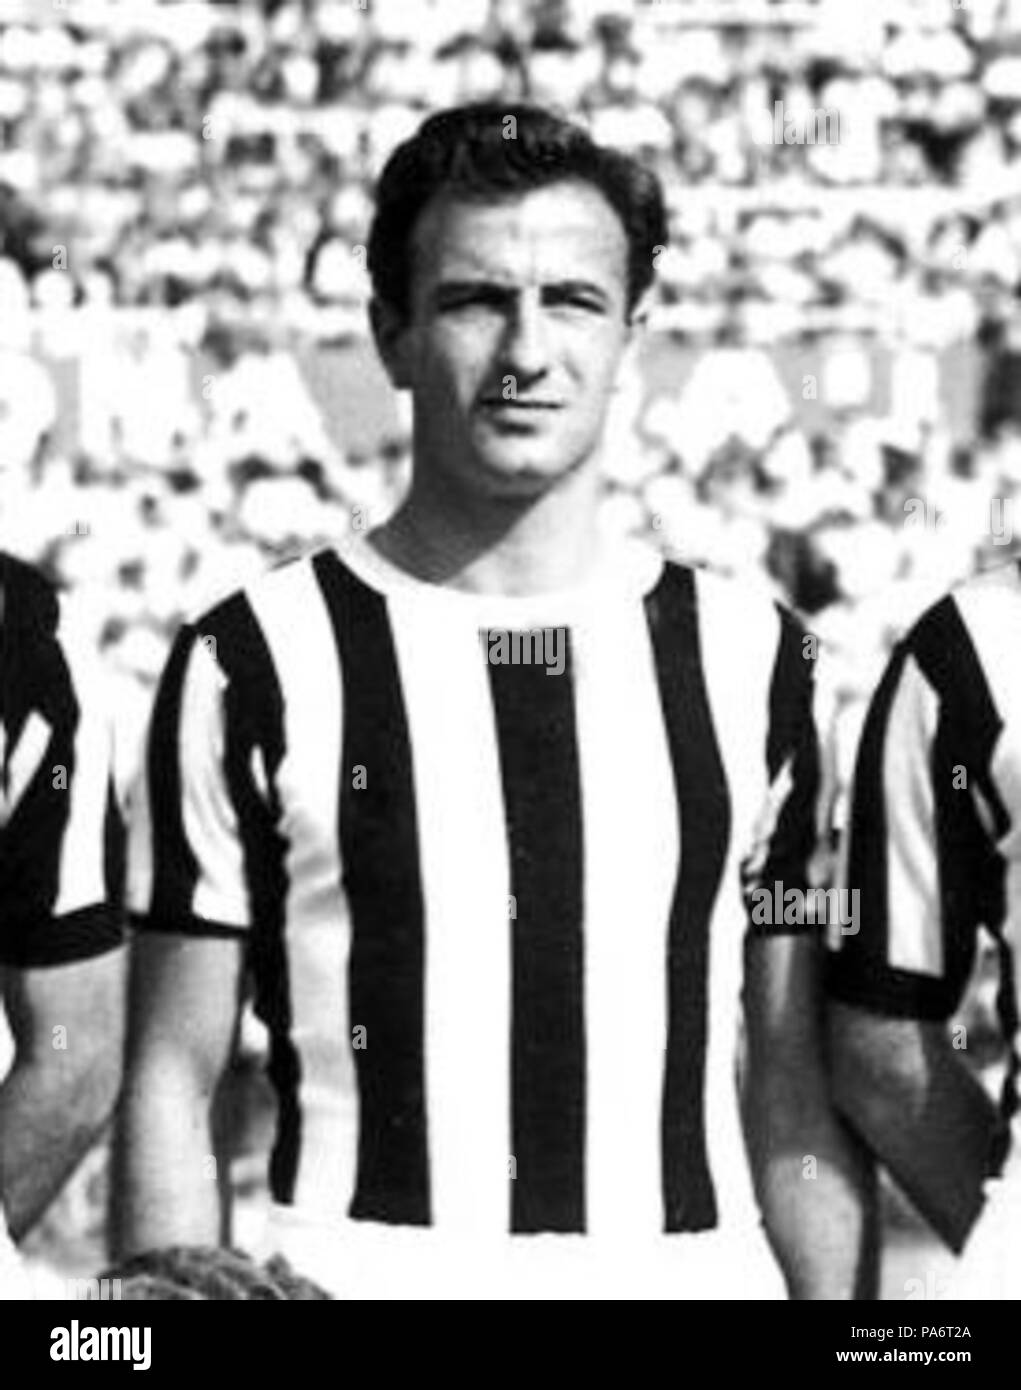 6 195152 Juventus Football Club Sergio Manente Stock